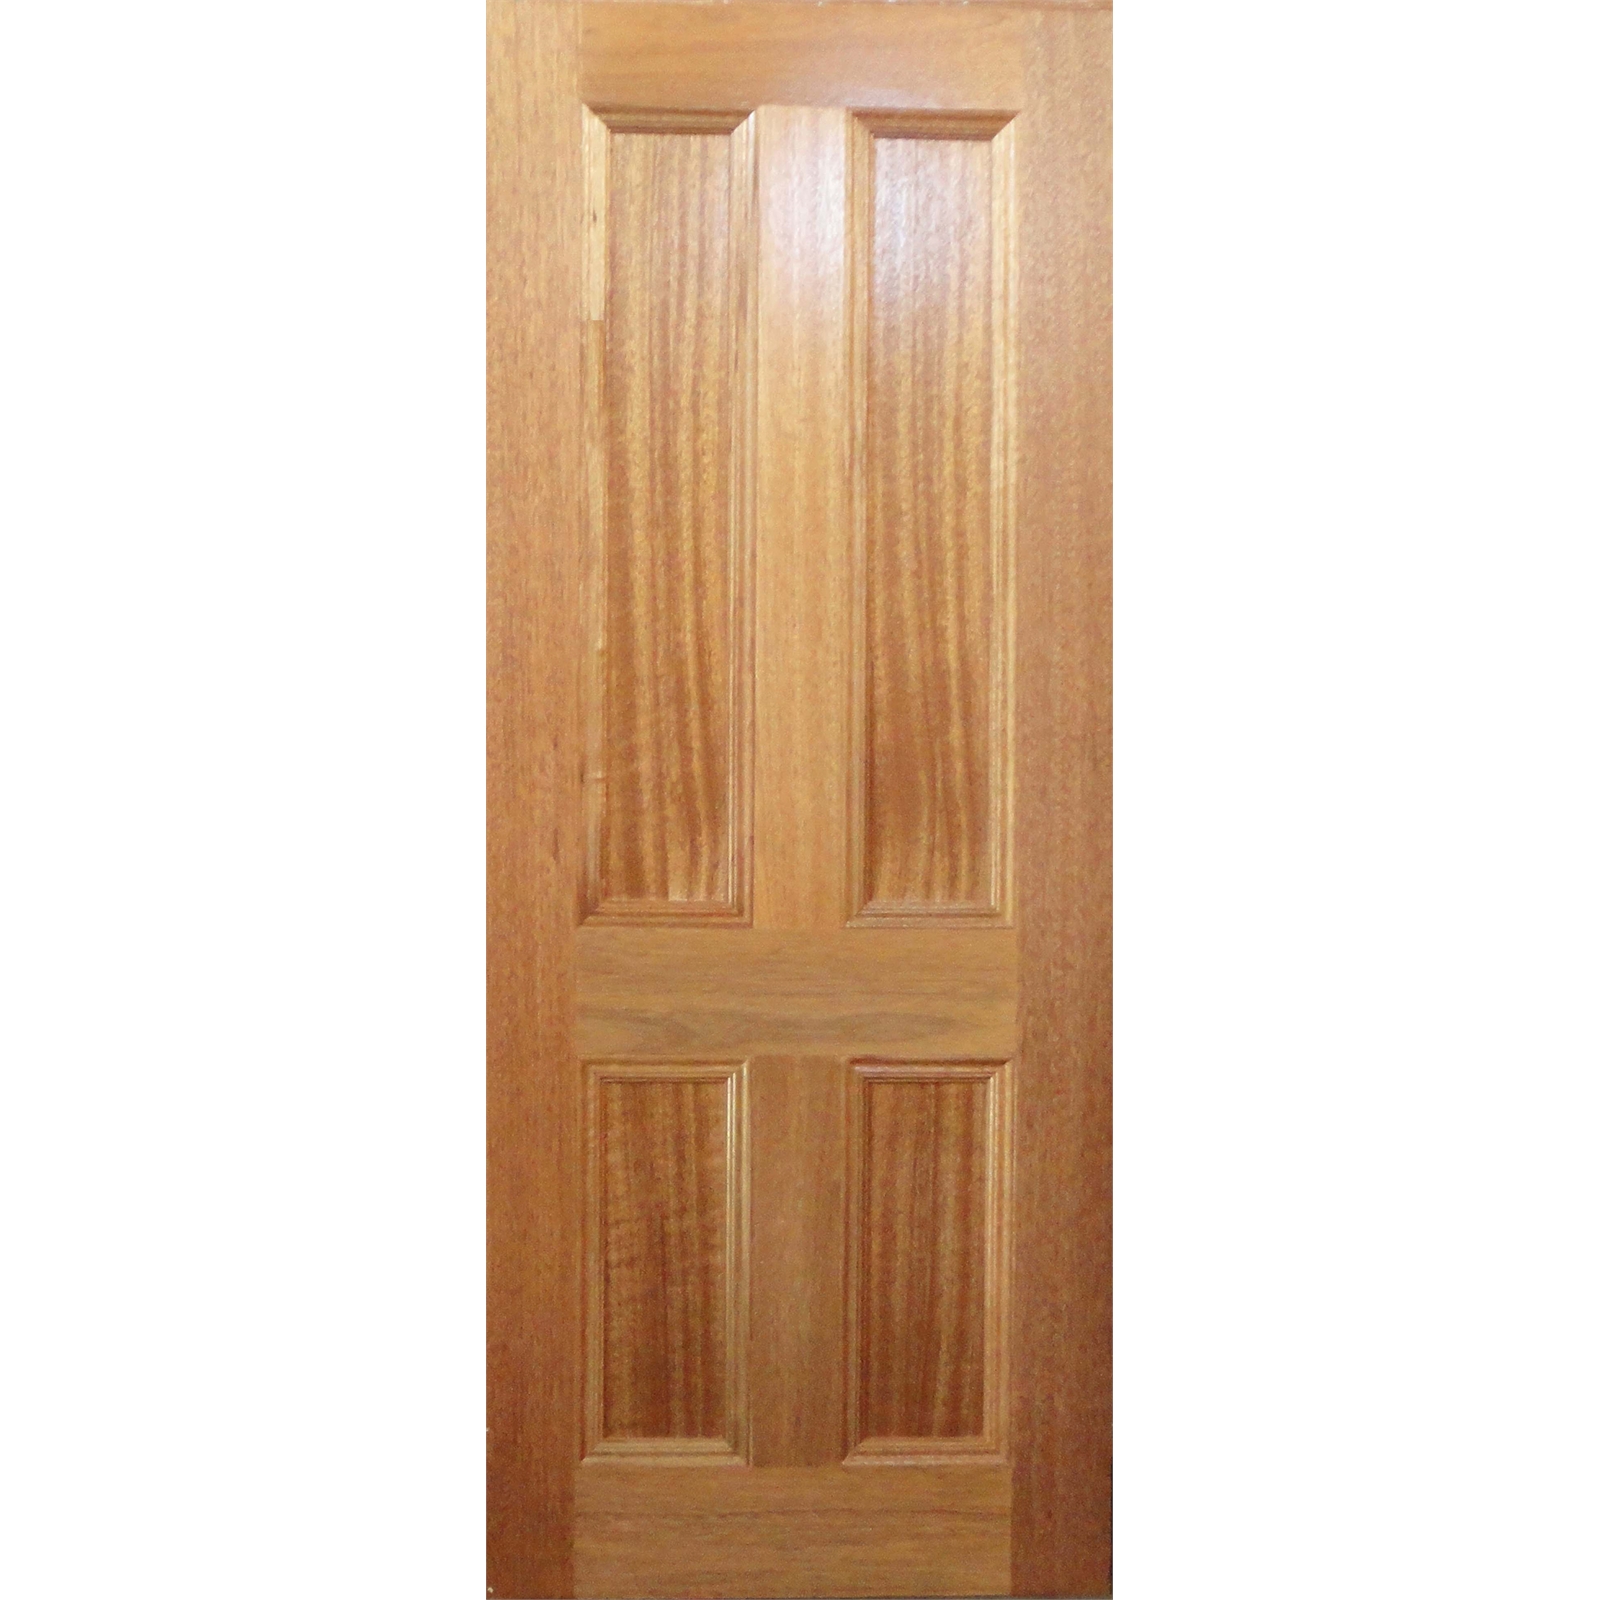 Woodcraft Doors 2040 x 770 x 35mm Maple Victorian Internal Door